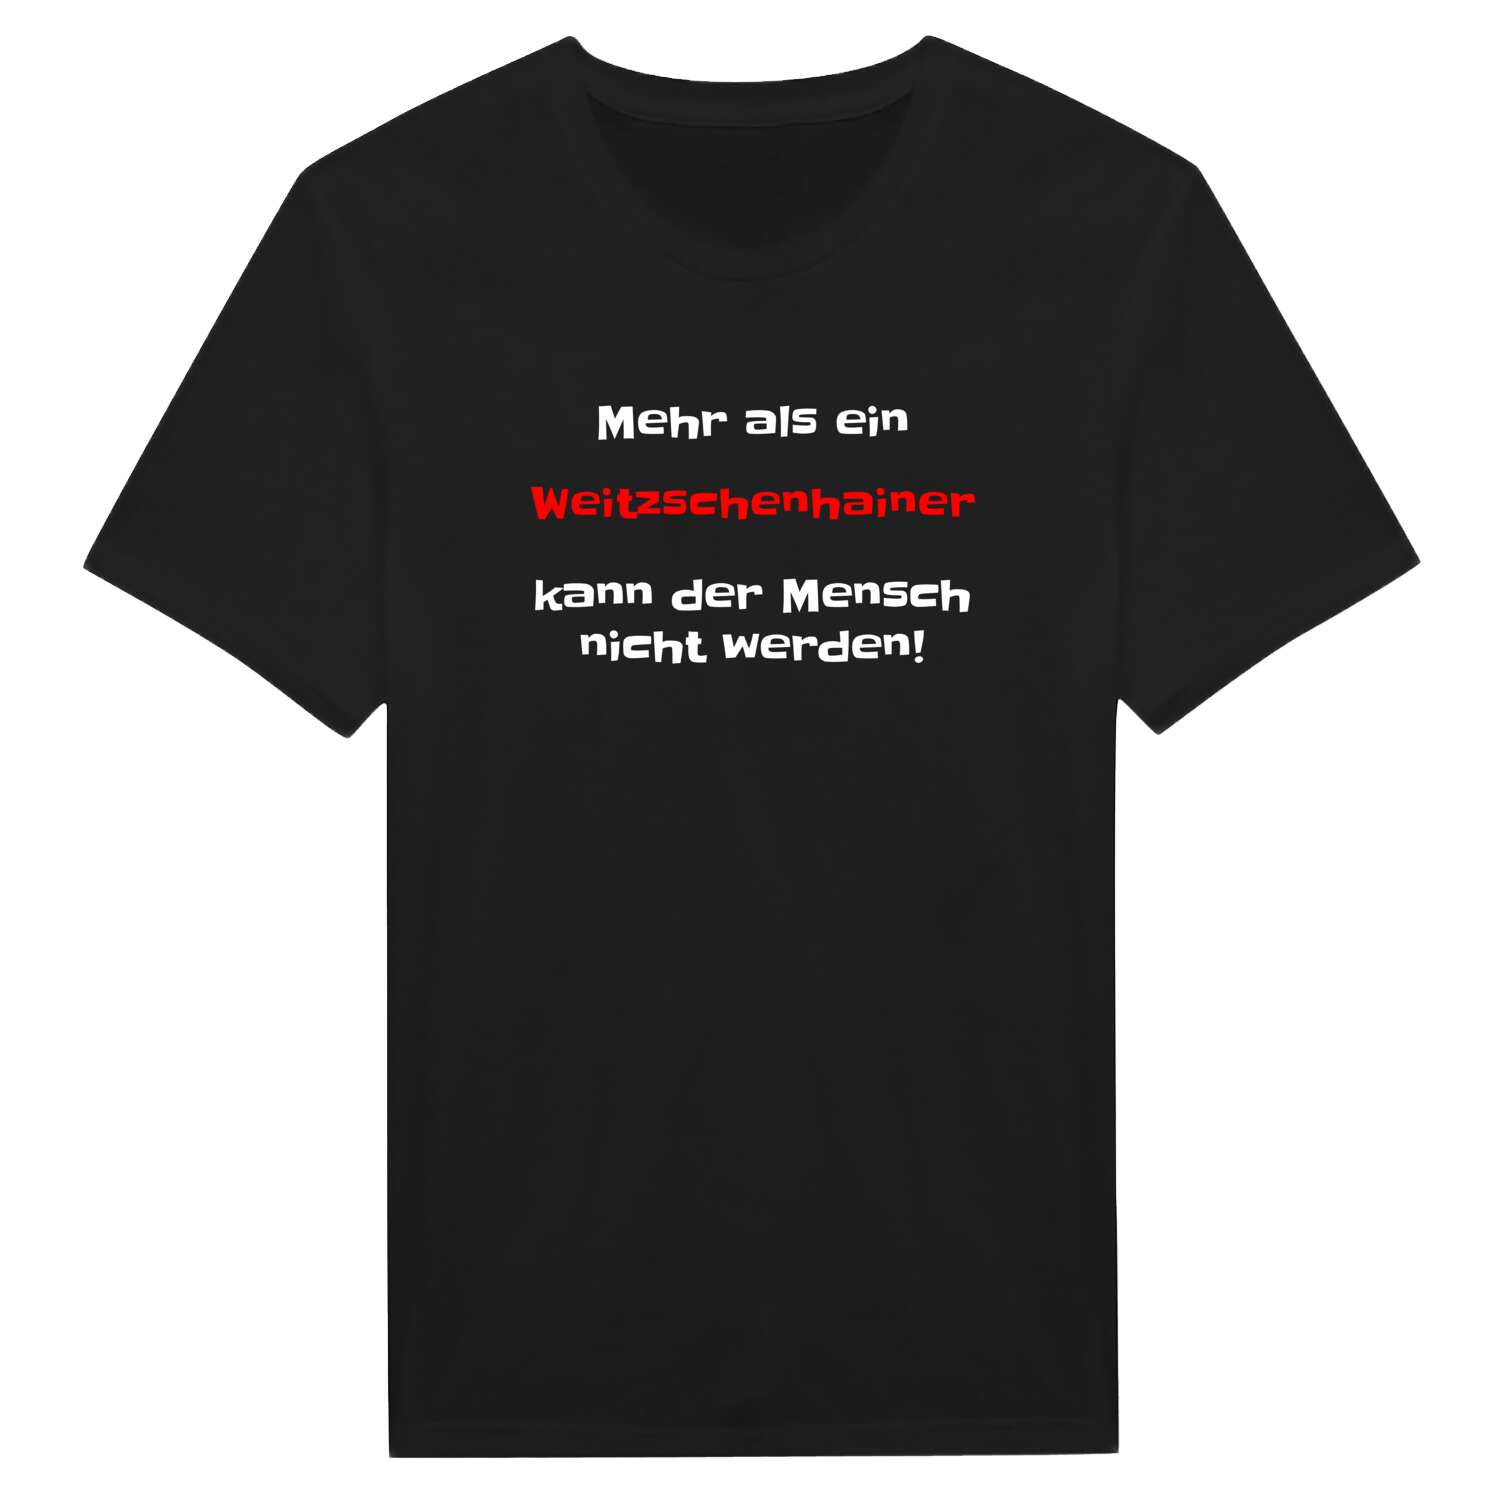 Weitzschenhain T-Shirt »Mehr als ein«